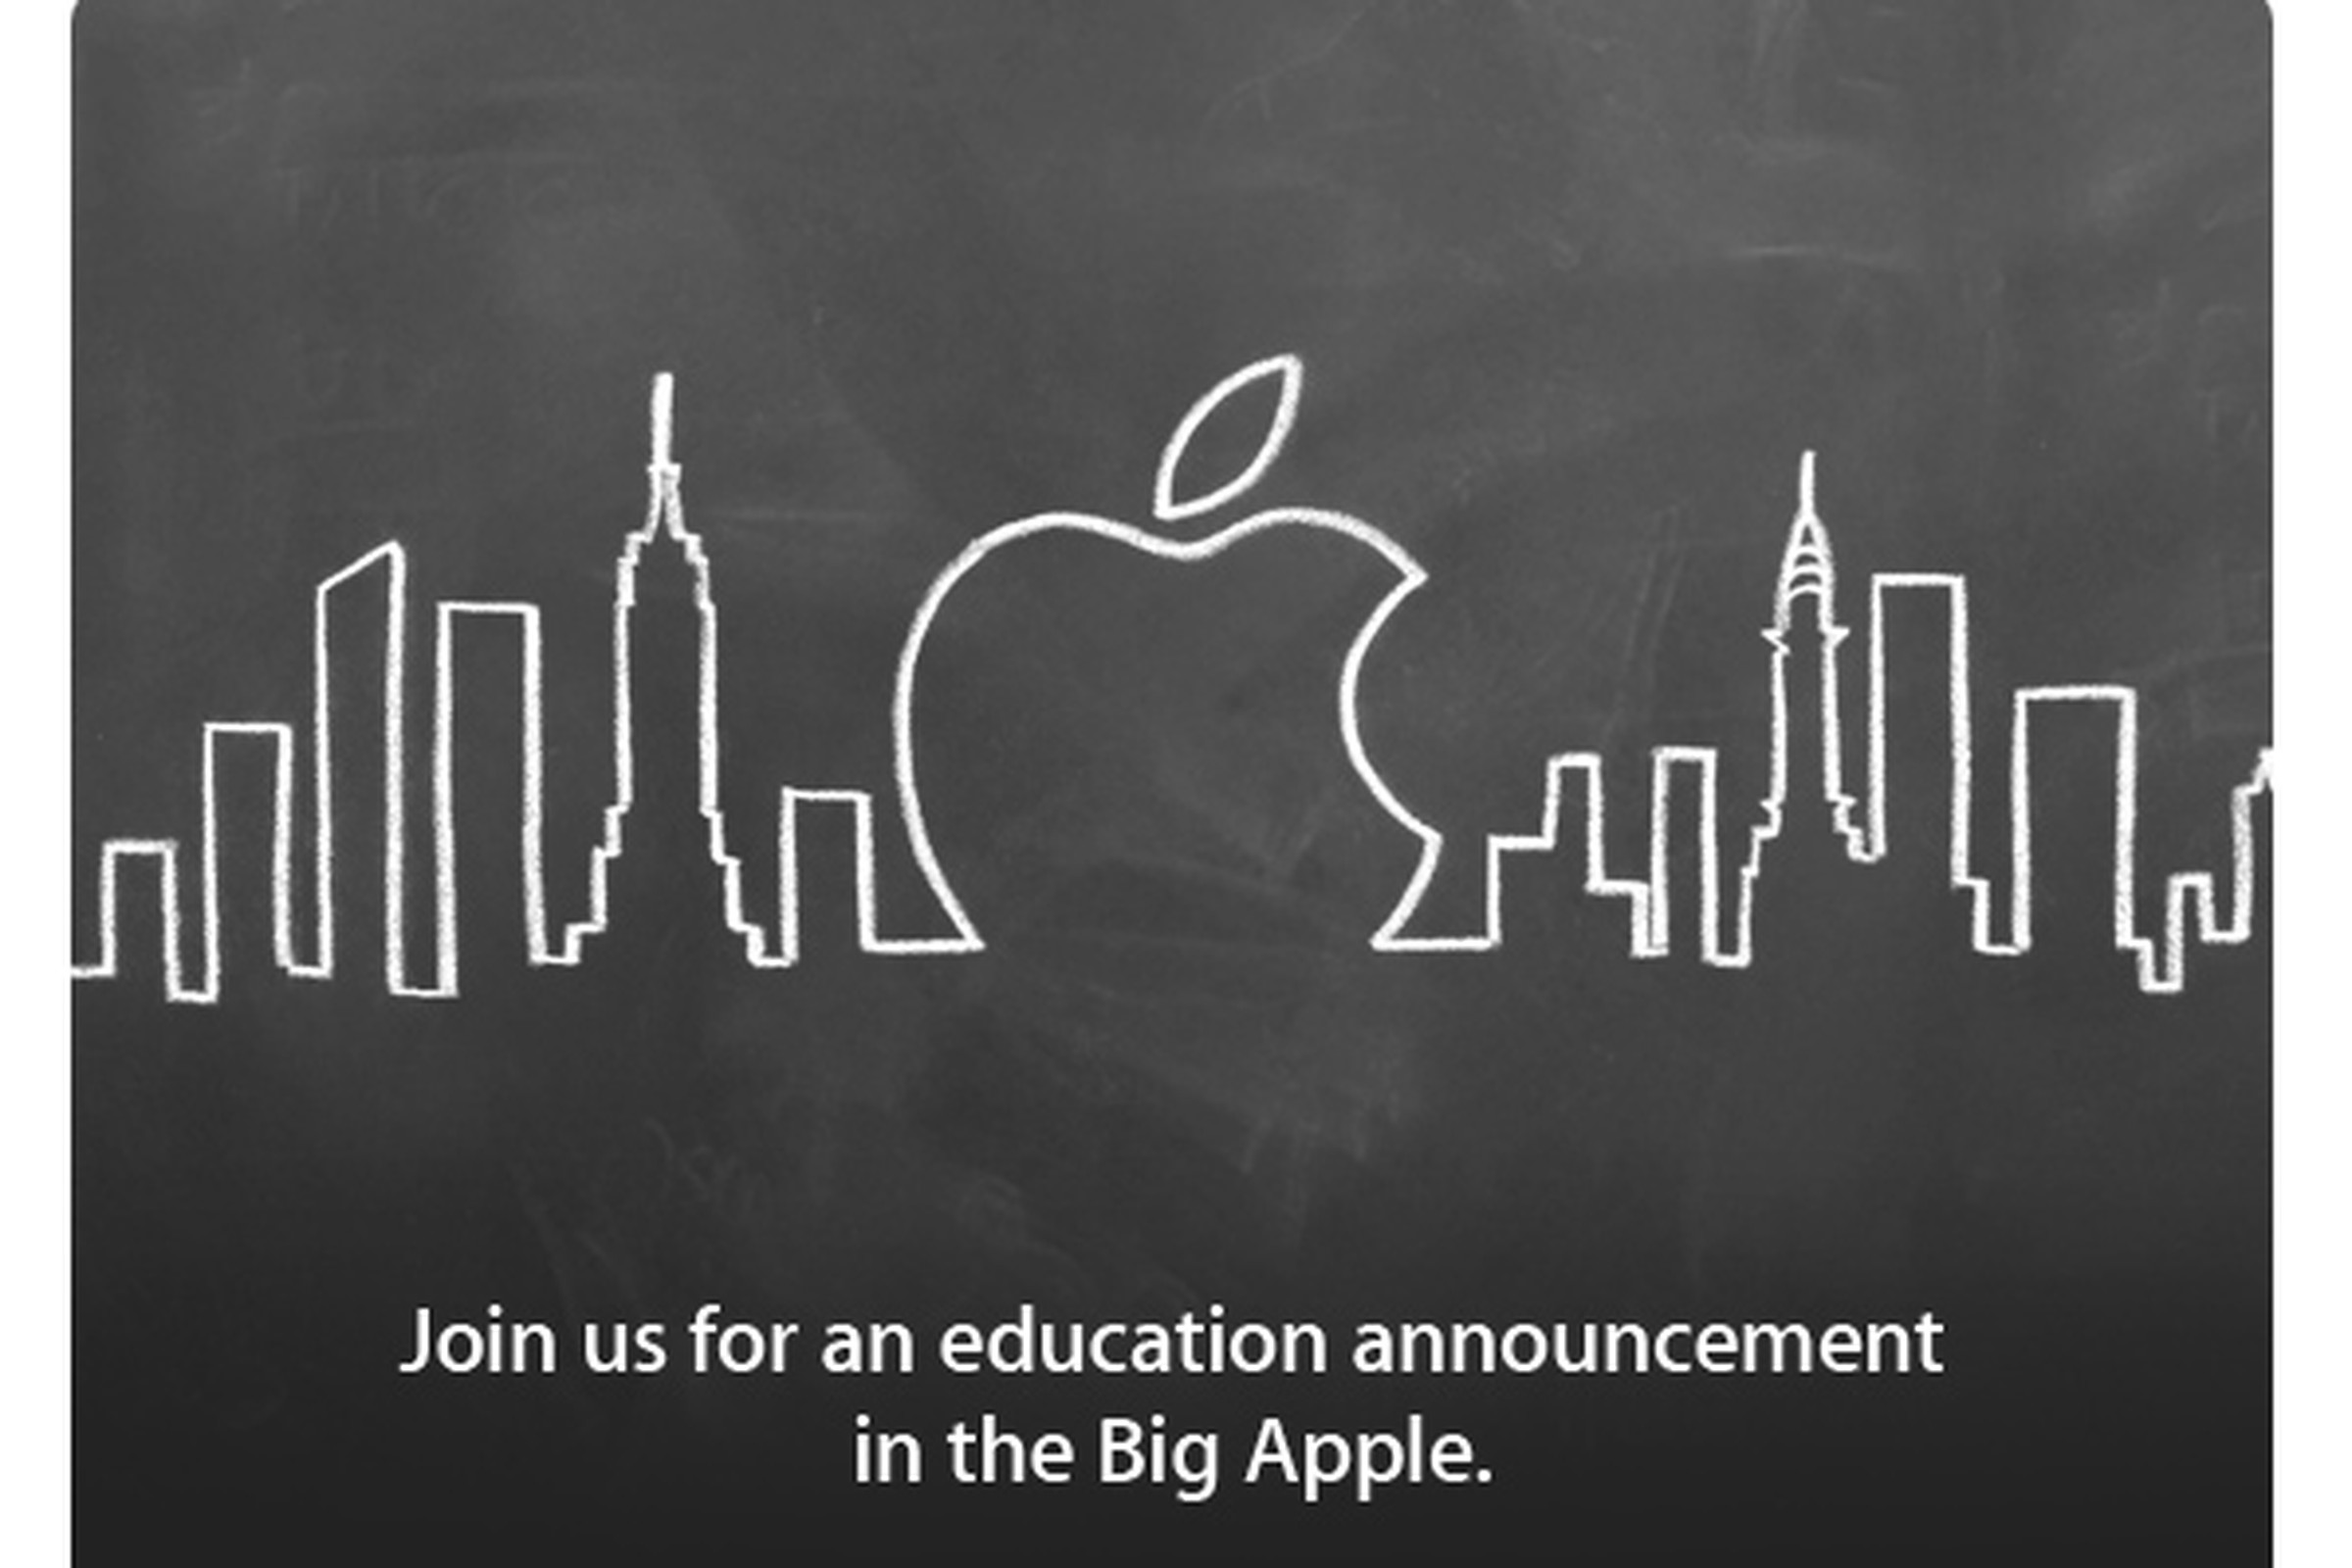 Apple education